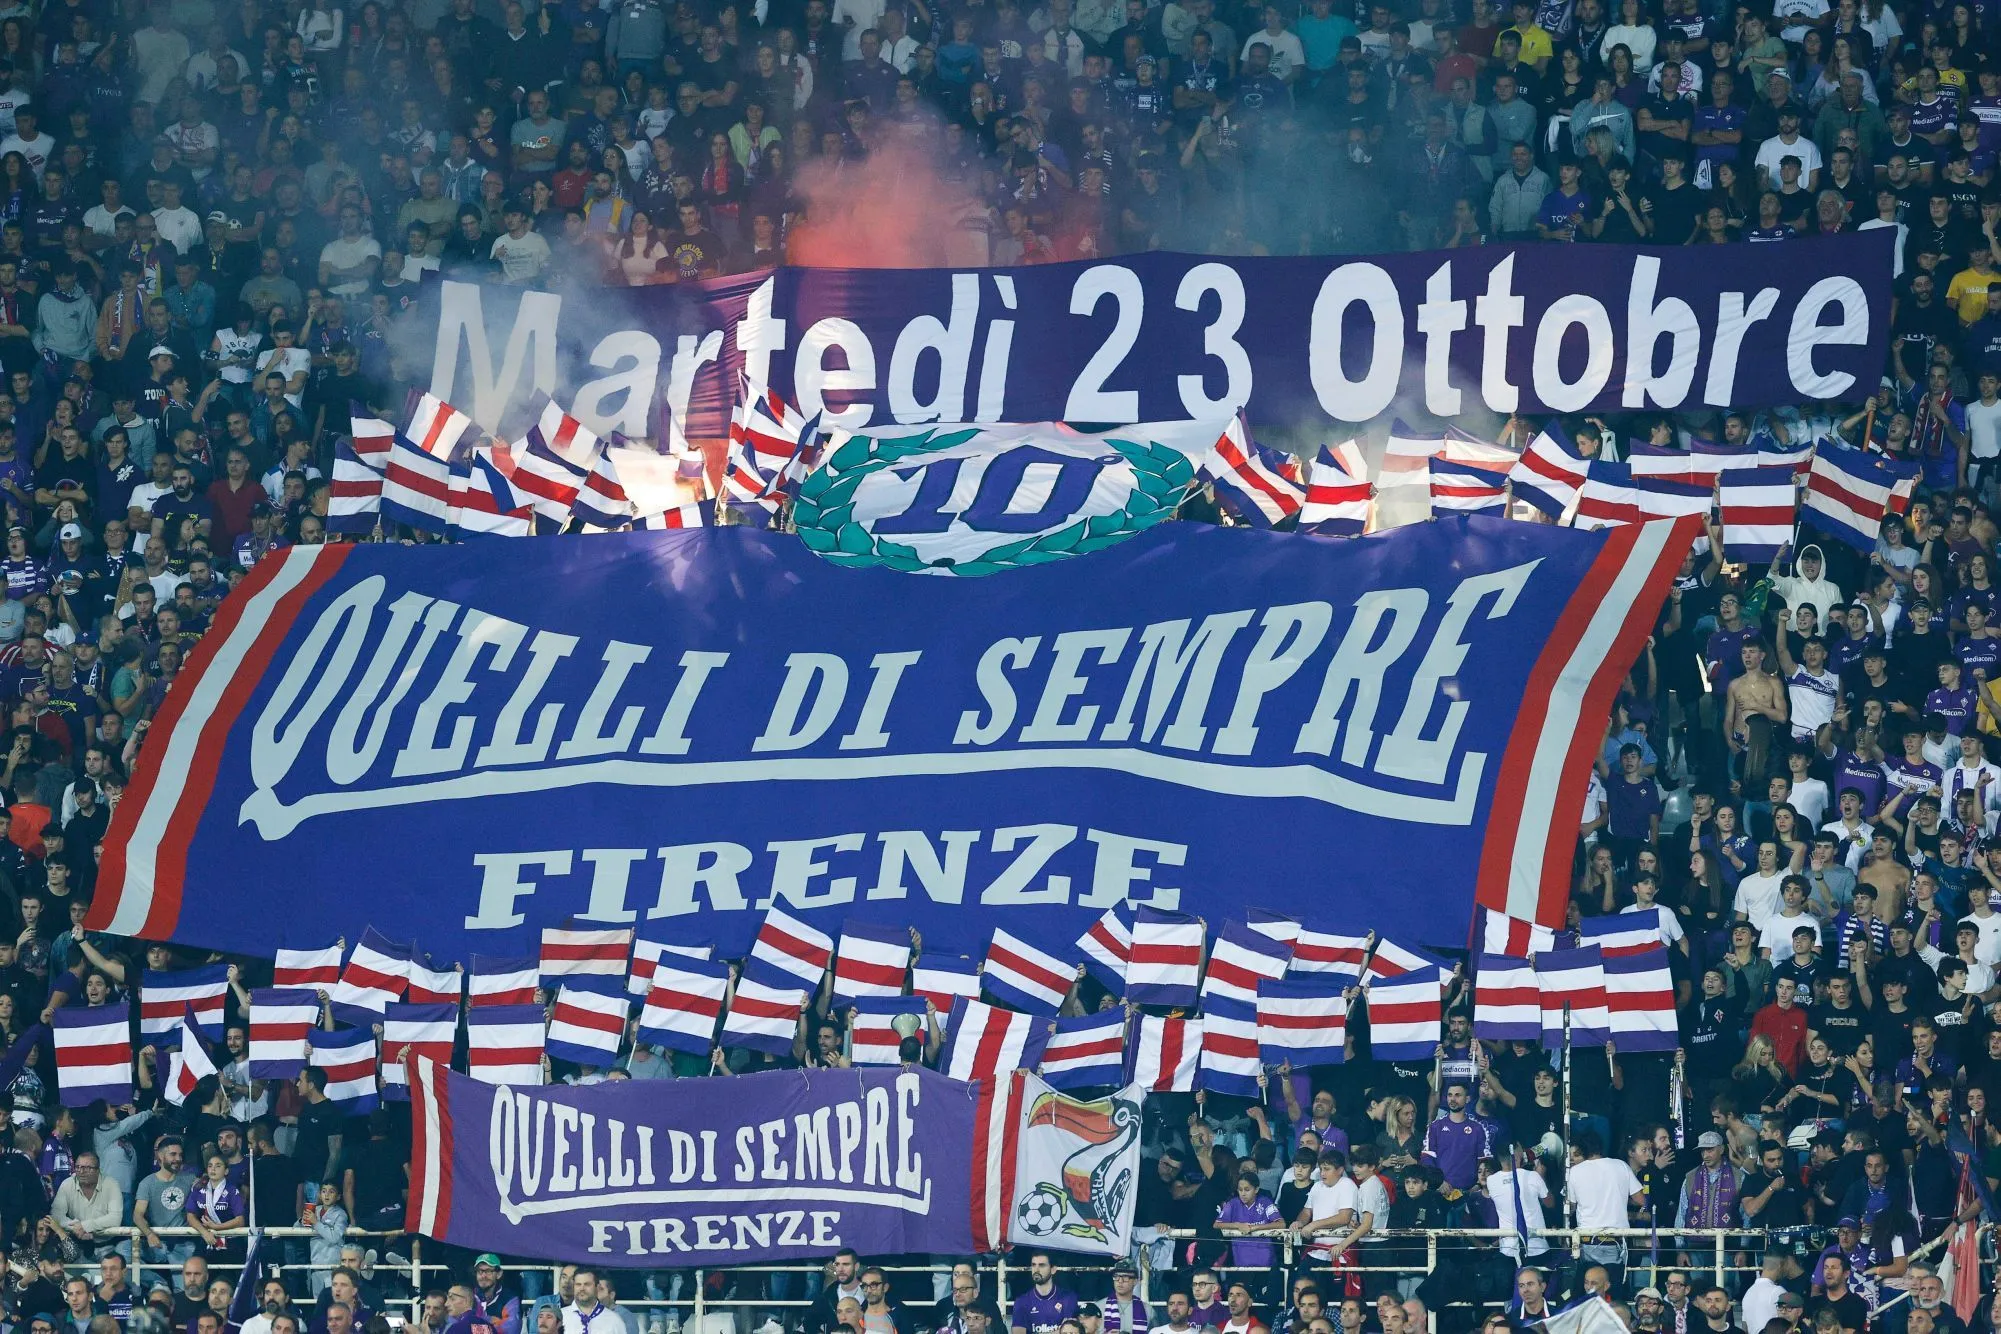 Un supporter de l’Inter Milan agressé à l’Artemio Franchi, l’auteur des faits identifié